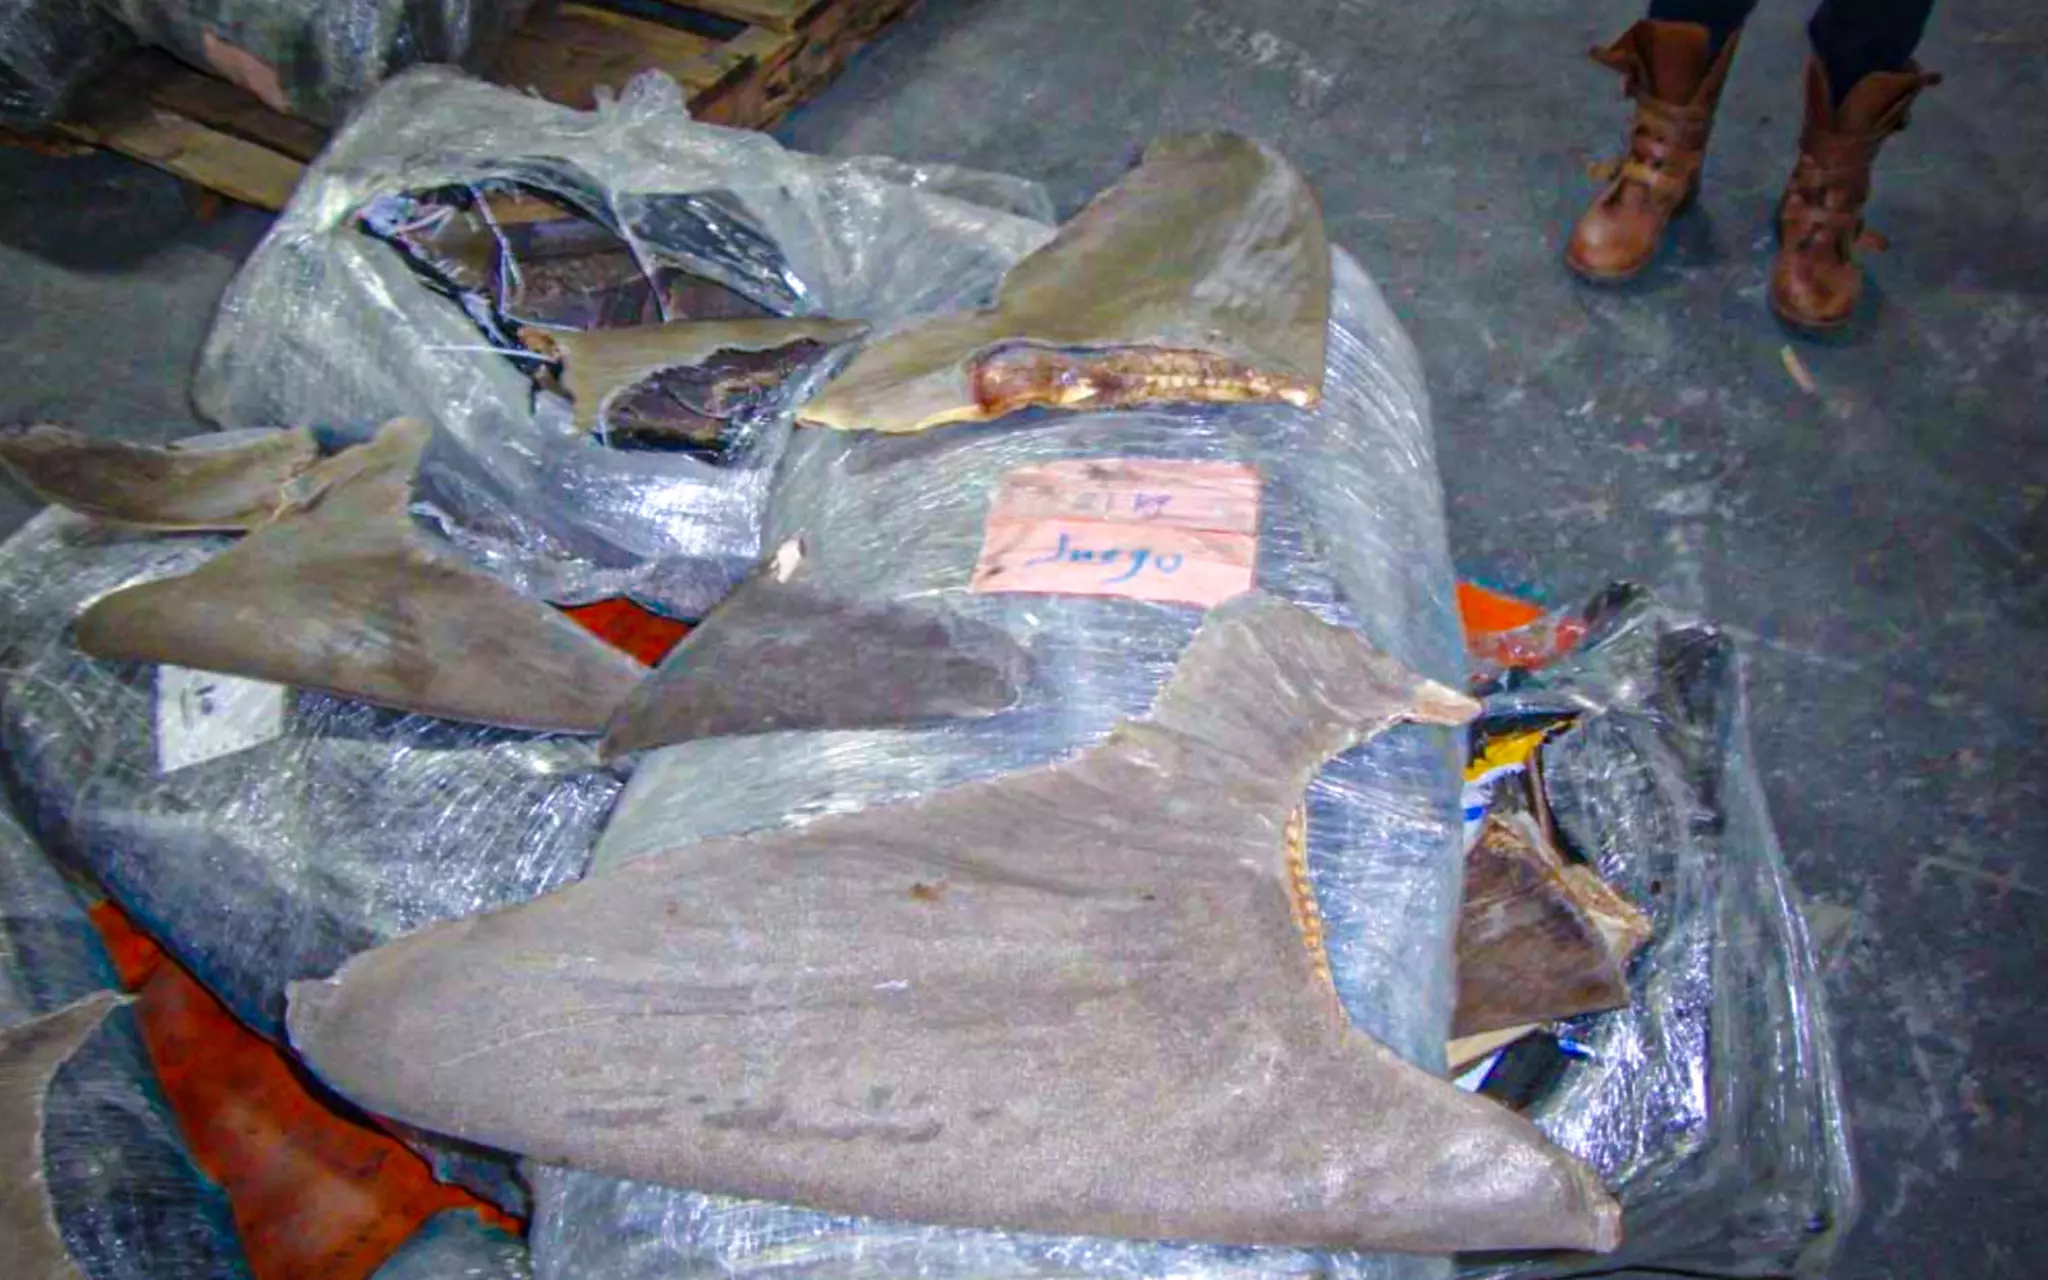 En los dos contenedores inspeccionados por la autoridad federal había sacos de aleta de tiburón, entre los que habían de especies protegidas.